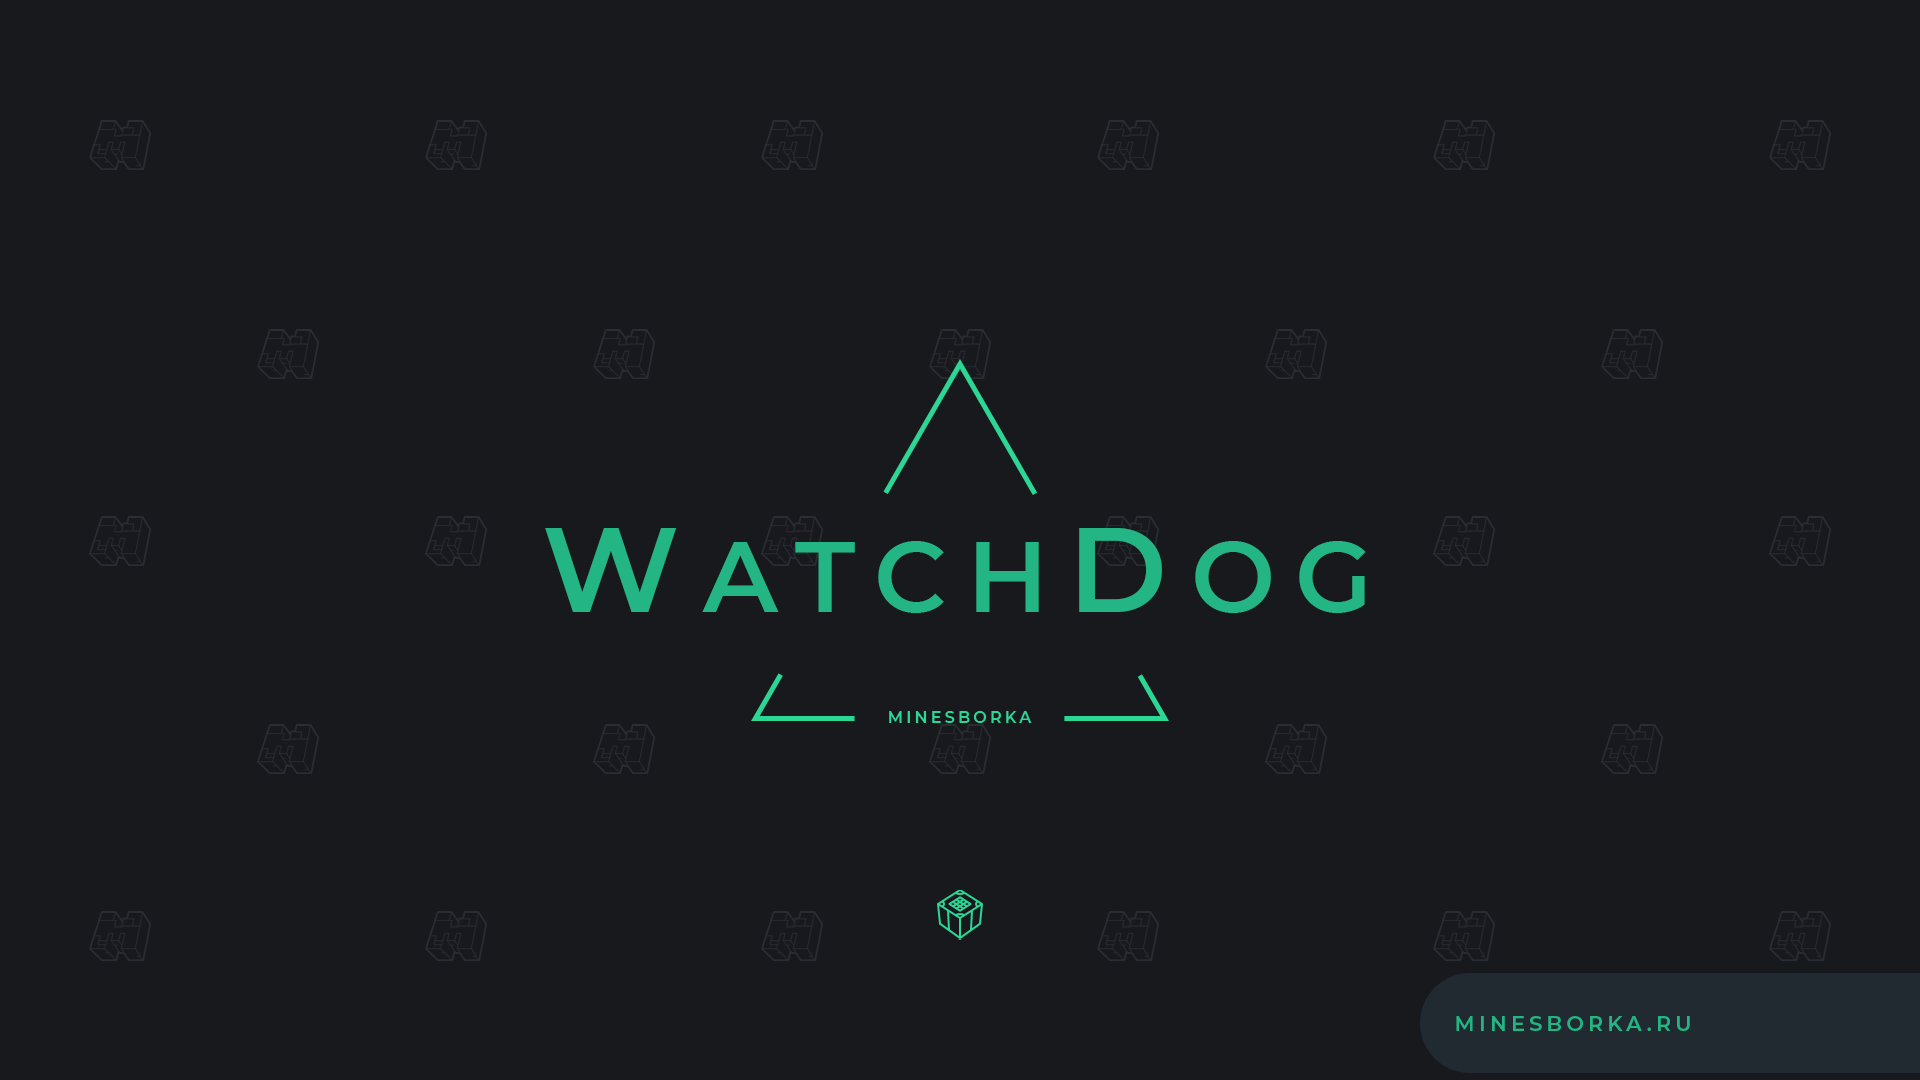 Скачать плагин WatchDog | Следи за жизнью игроков на сервере Майнкрафт